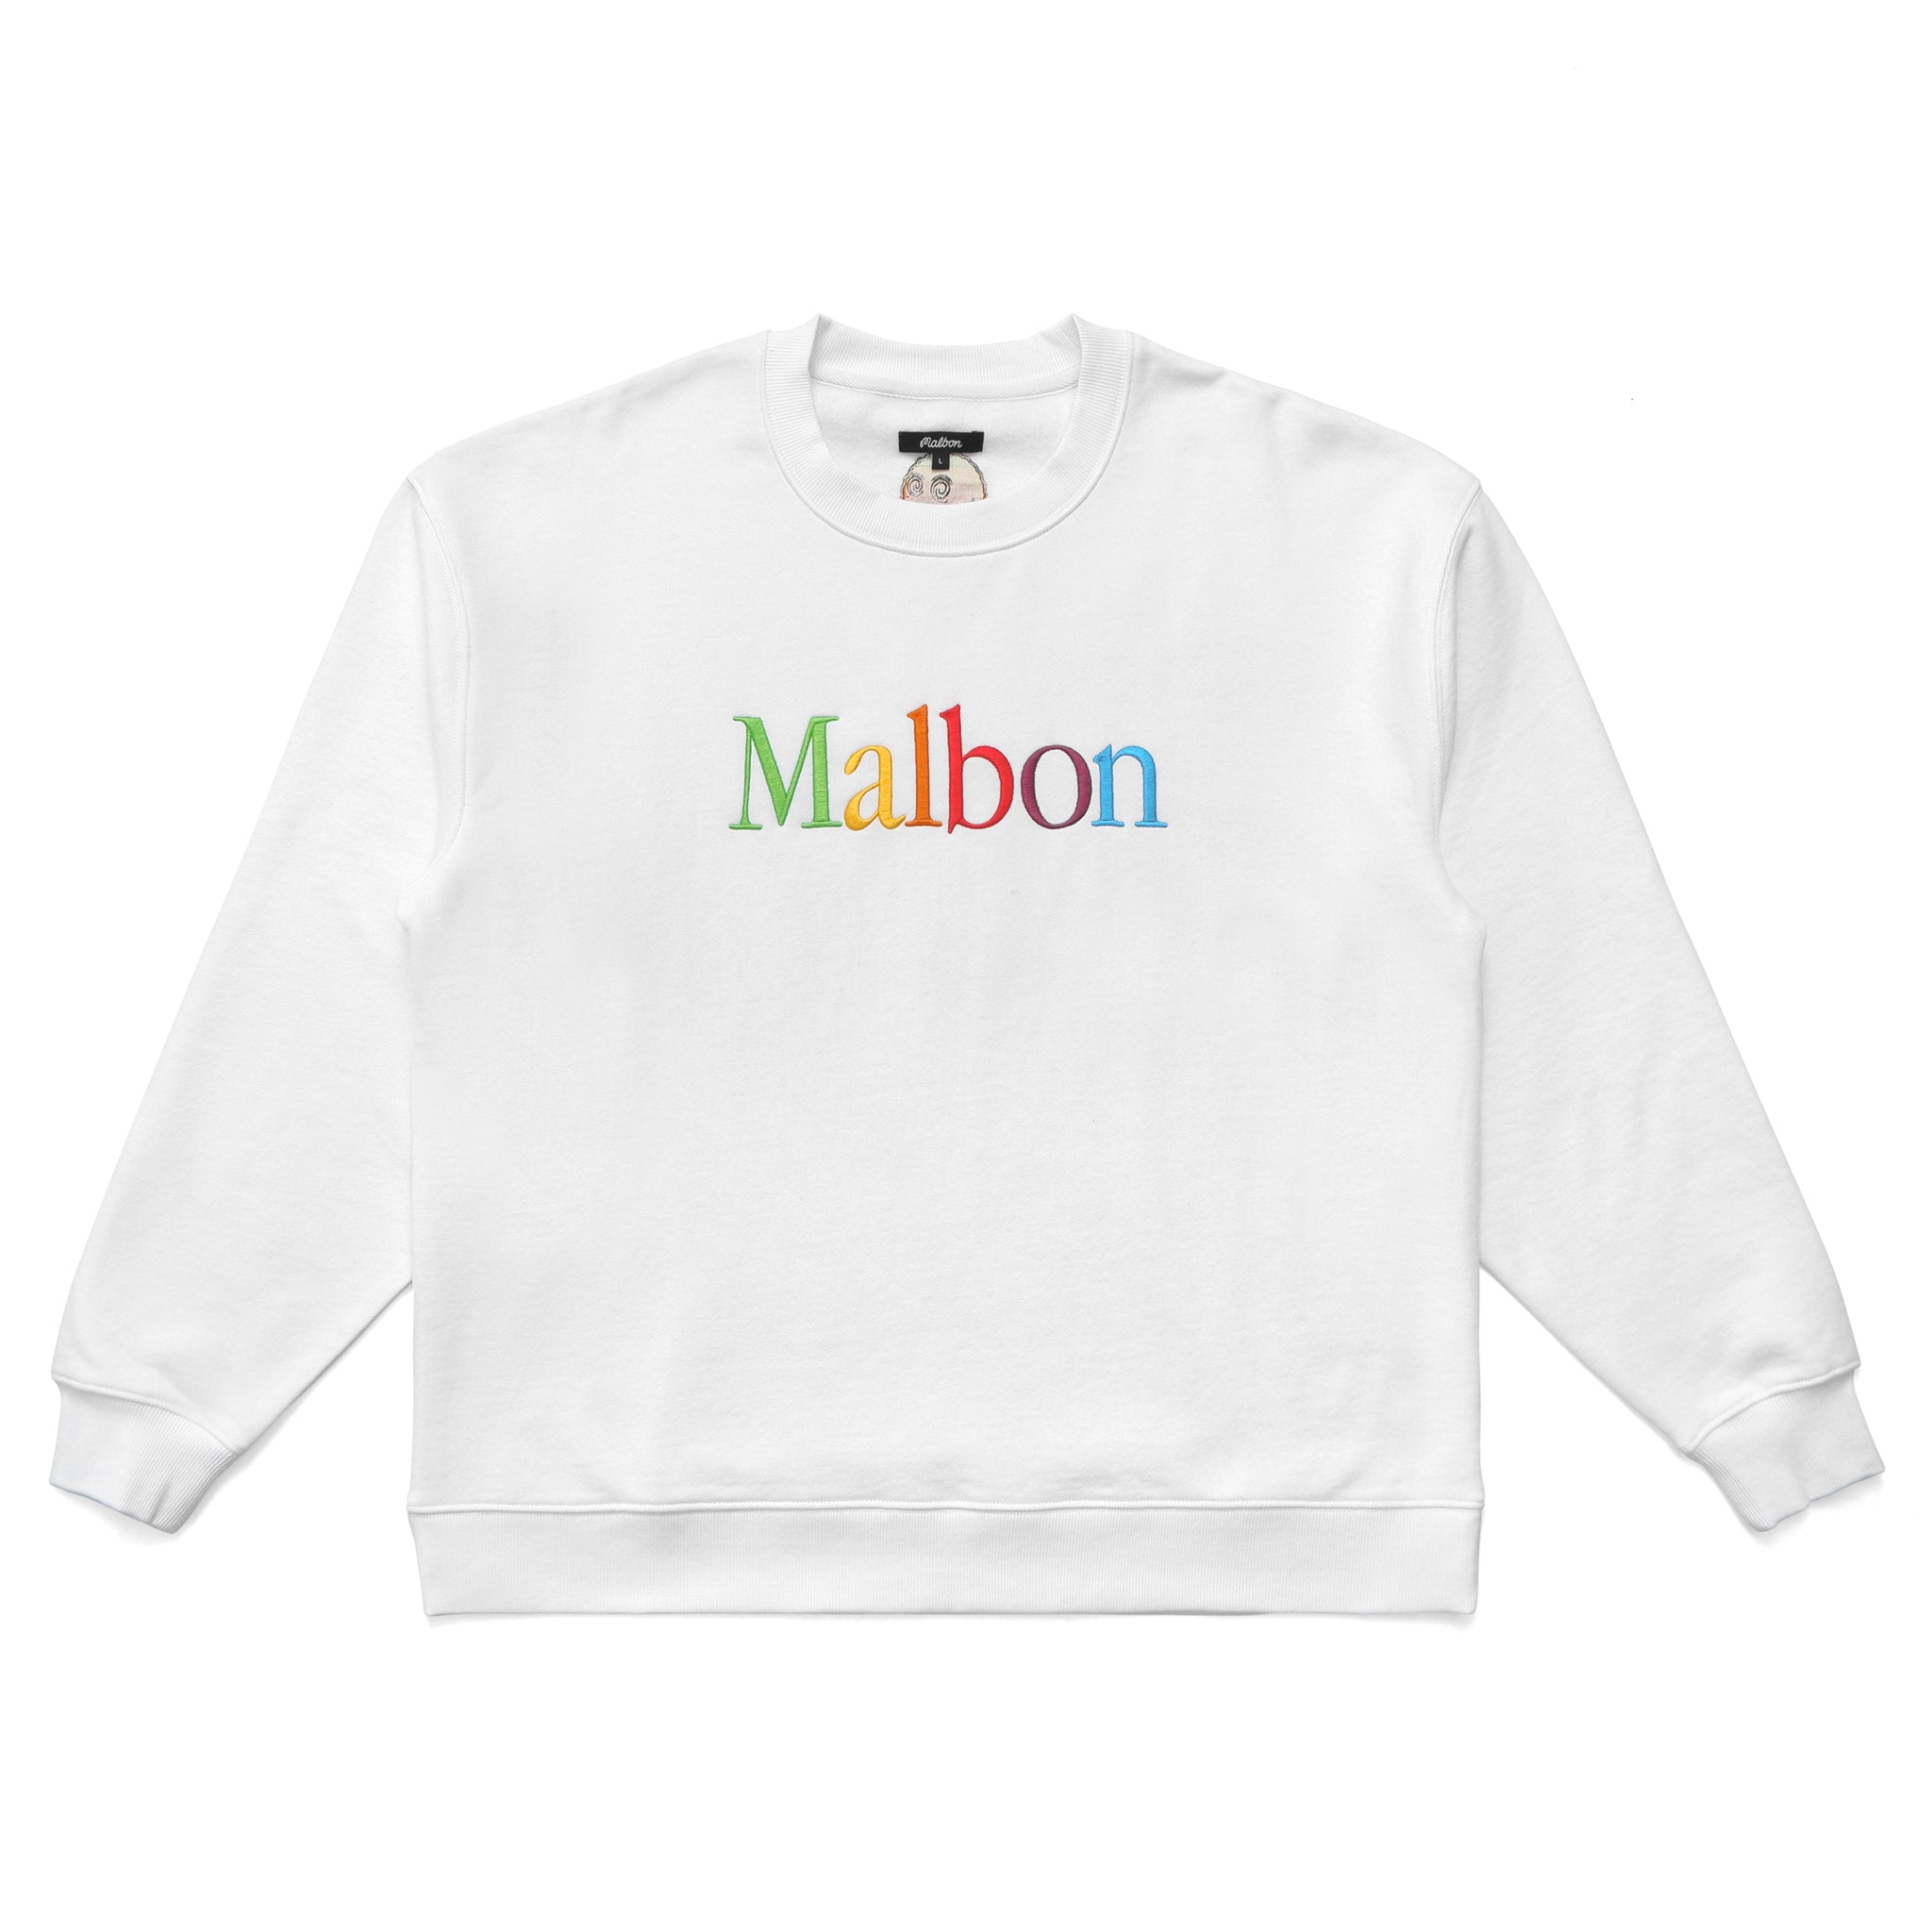 Hoodies & Sweatshirts – Malbon Golf